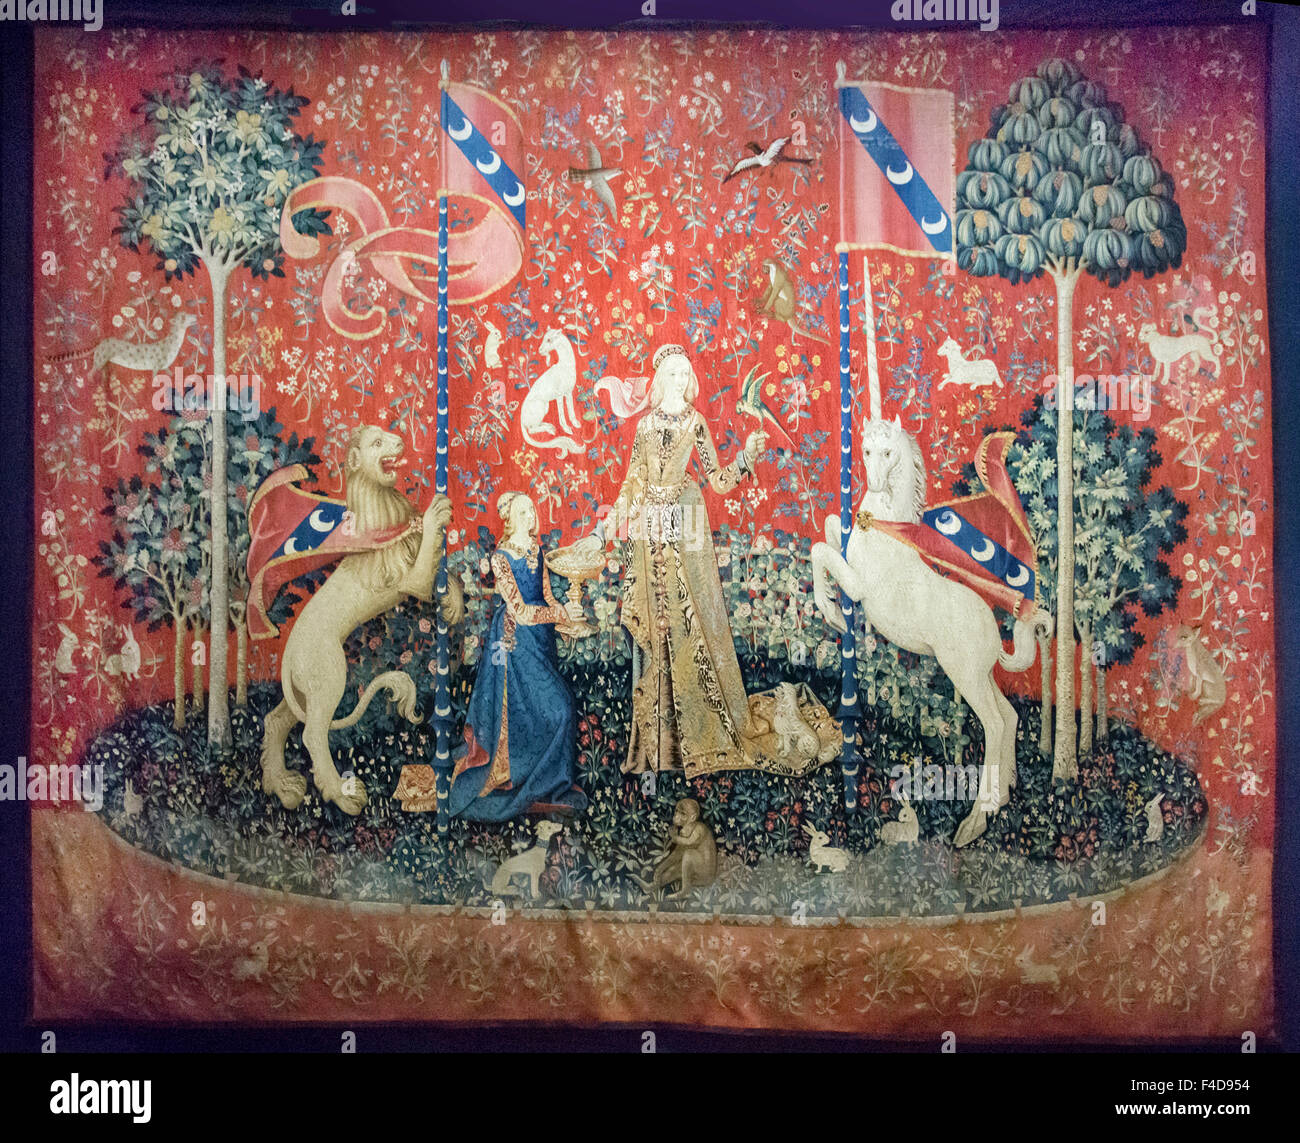 L'Europa, Francia, Parigi. Uno dei sei Lady e la Unicorn arazzi nel museo di Cluny del Medioevo. Essa risale a circa il 1500 CE e riguarda il senso del gusto. Foto Stock